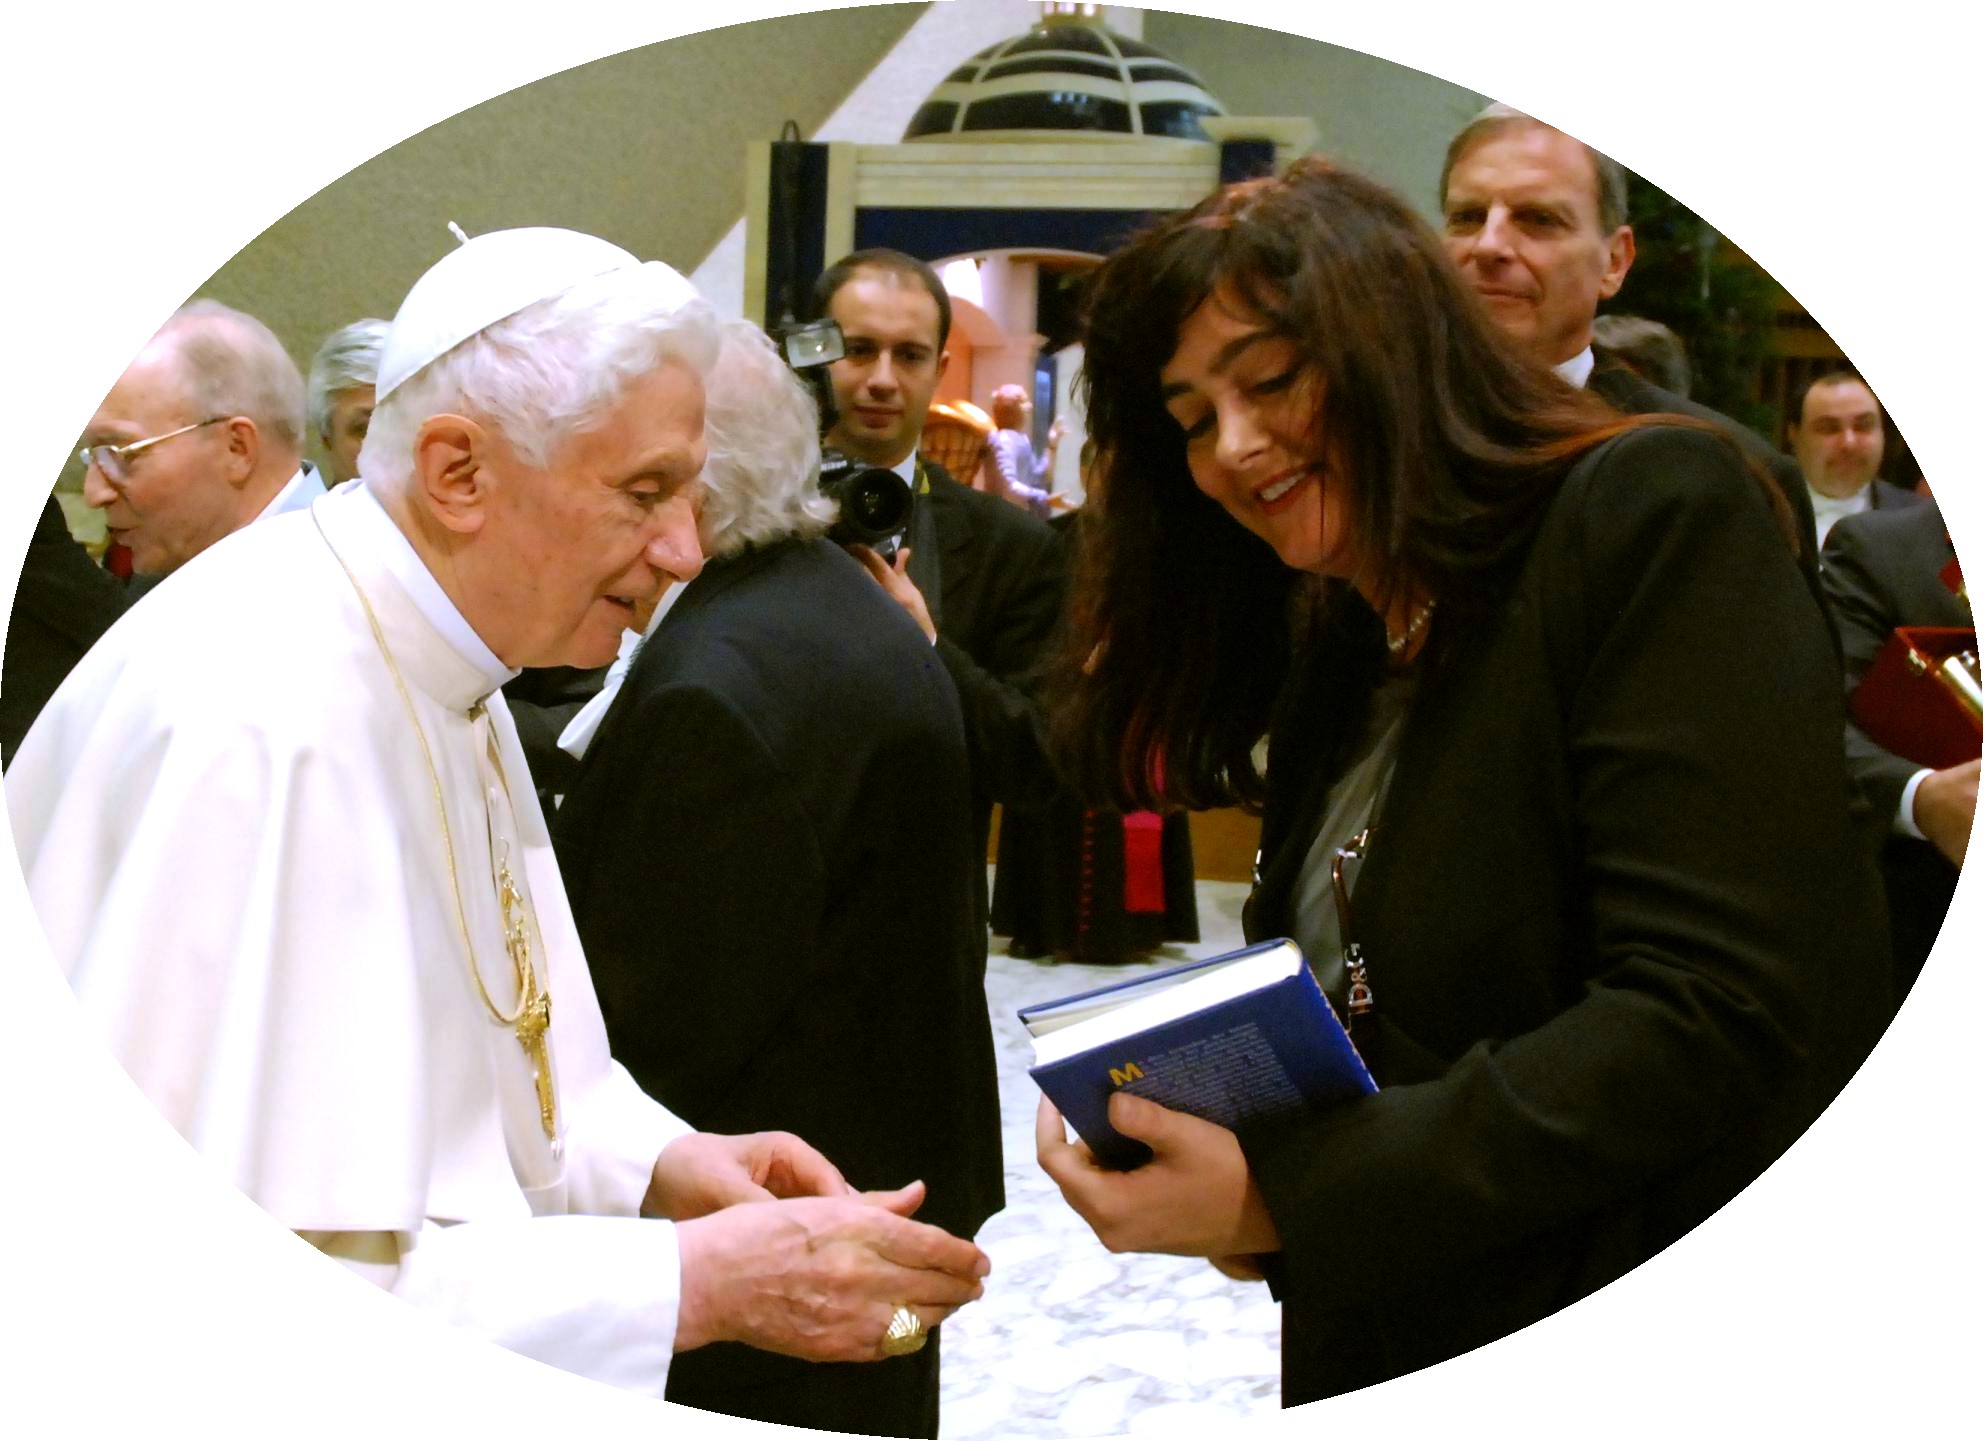 Michaela Koller überreicht dem Papst ihr Buch